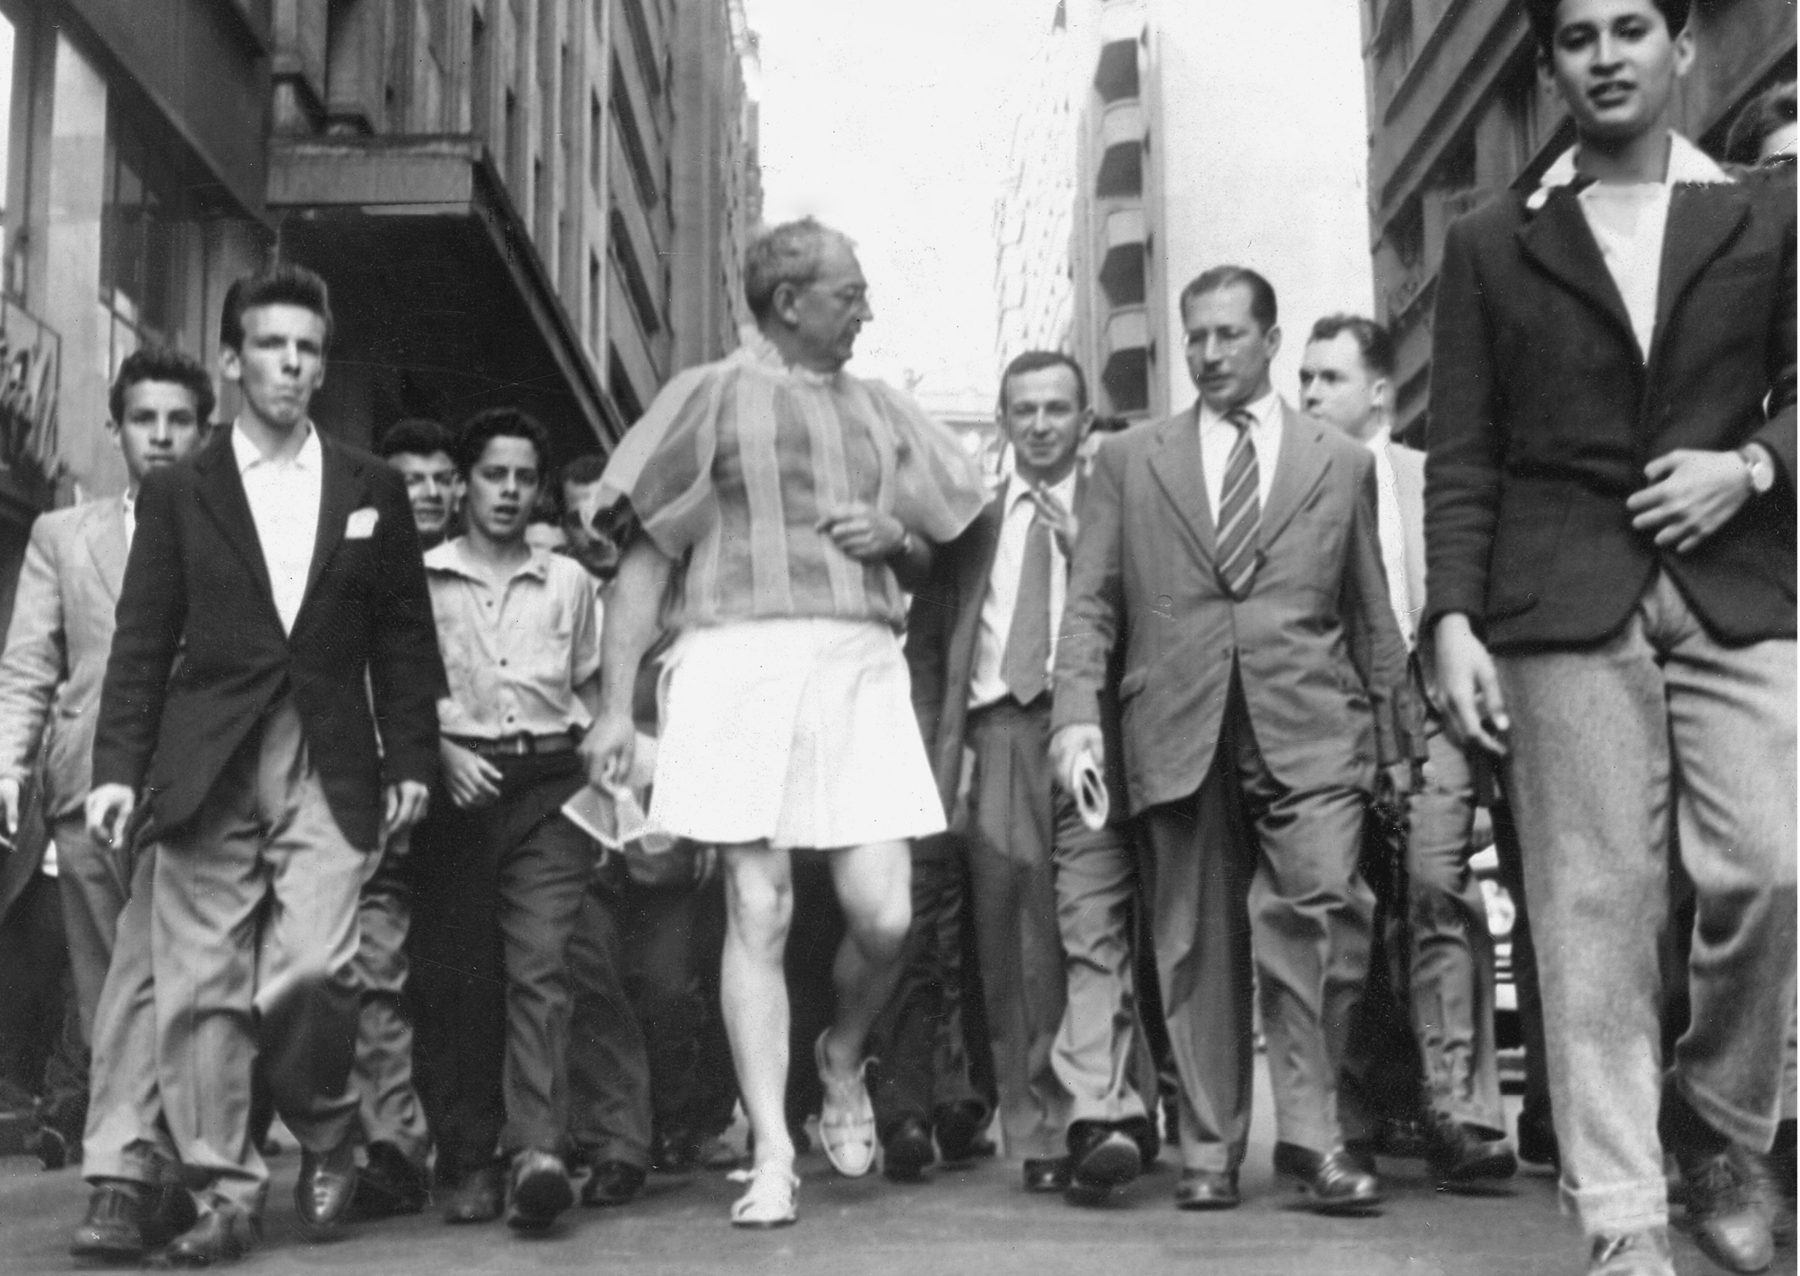 Fotografia em preto e branco. No centro da imagem, um homem grisalho e de óculos usa uma blusa bufante, saia e sandálias. Ao redor, diversos homens usando terno. Eles estão caminhando em uma rua. Nas laterais, prédios.